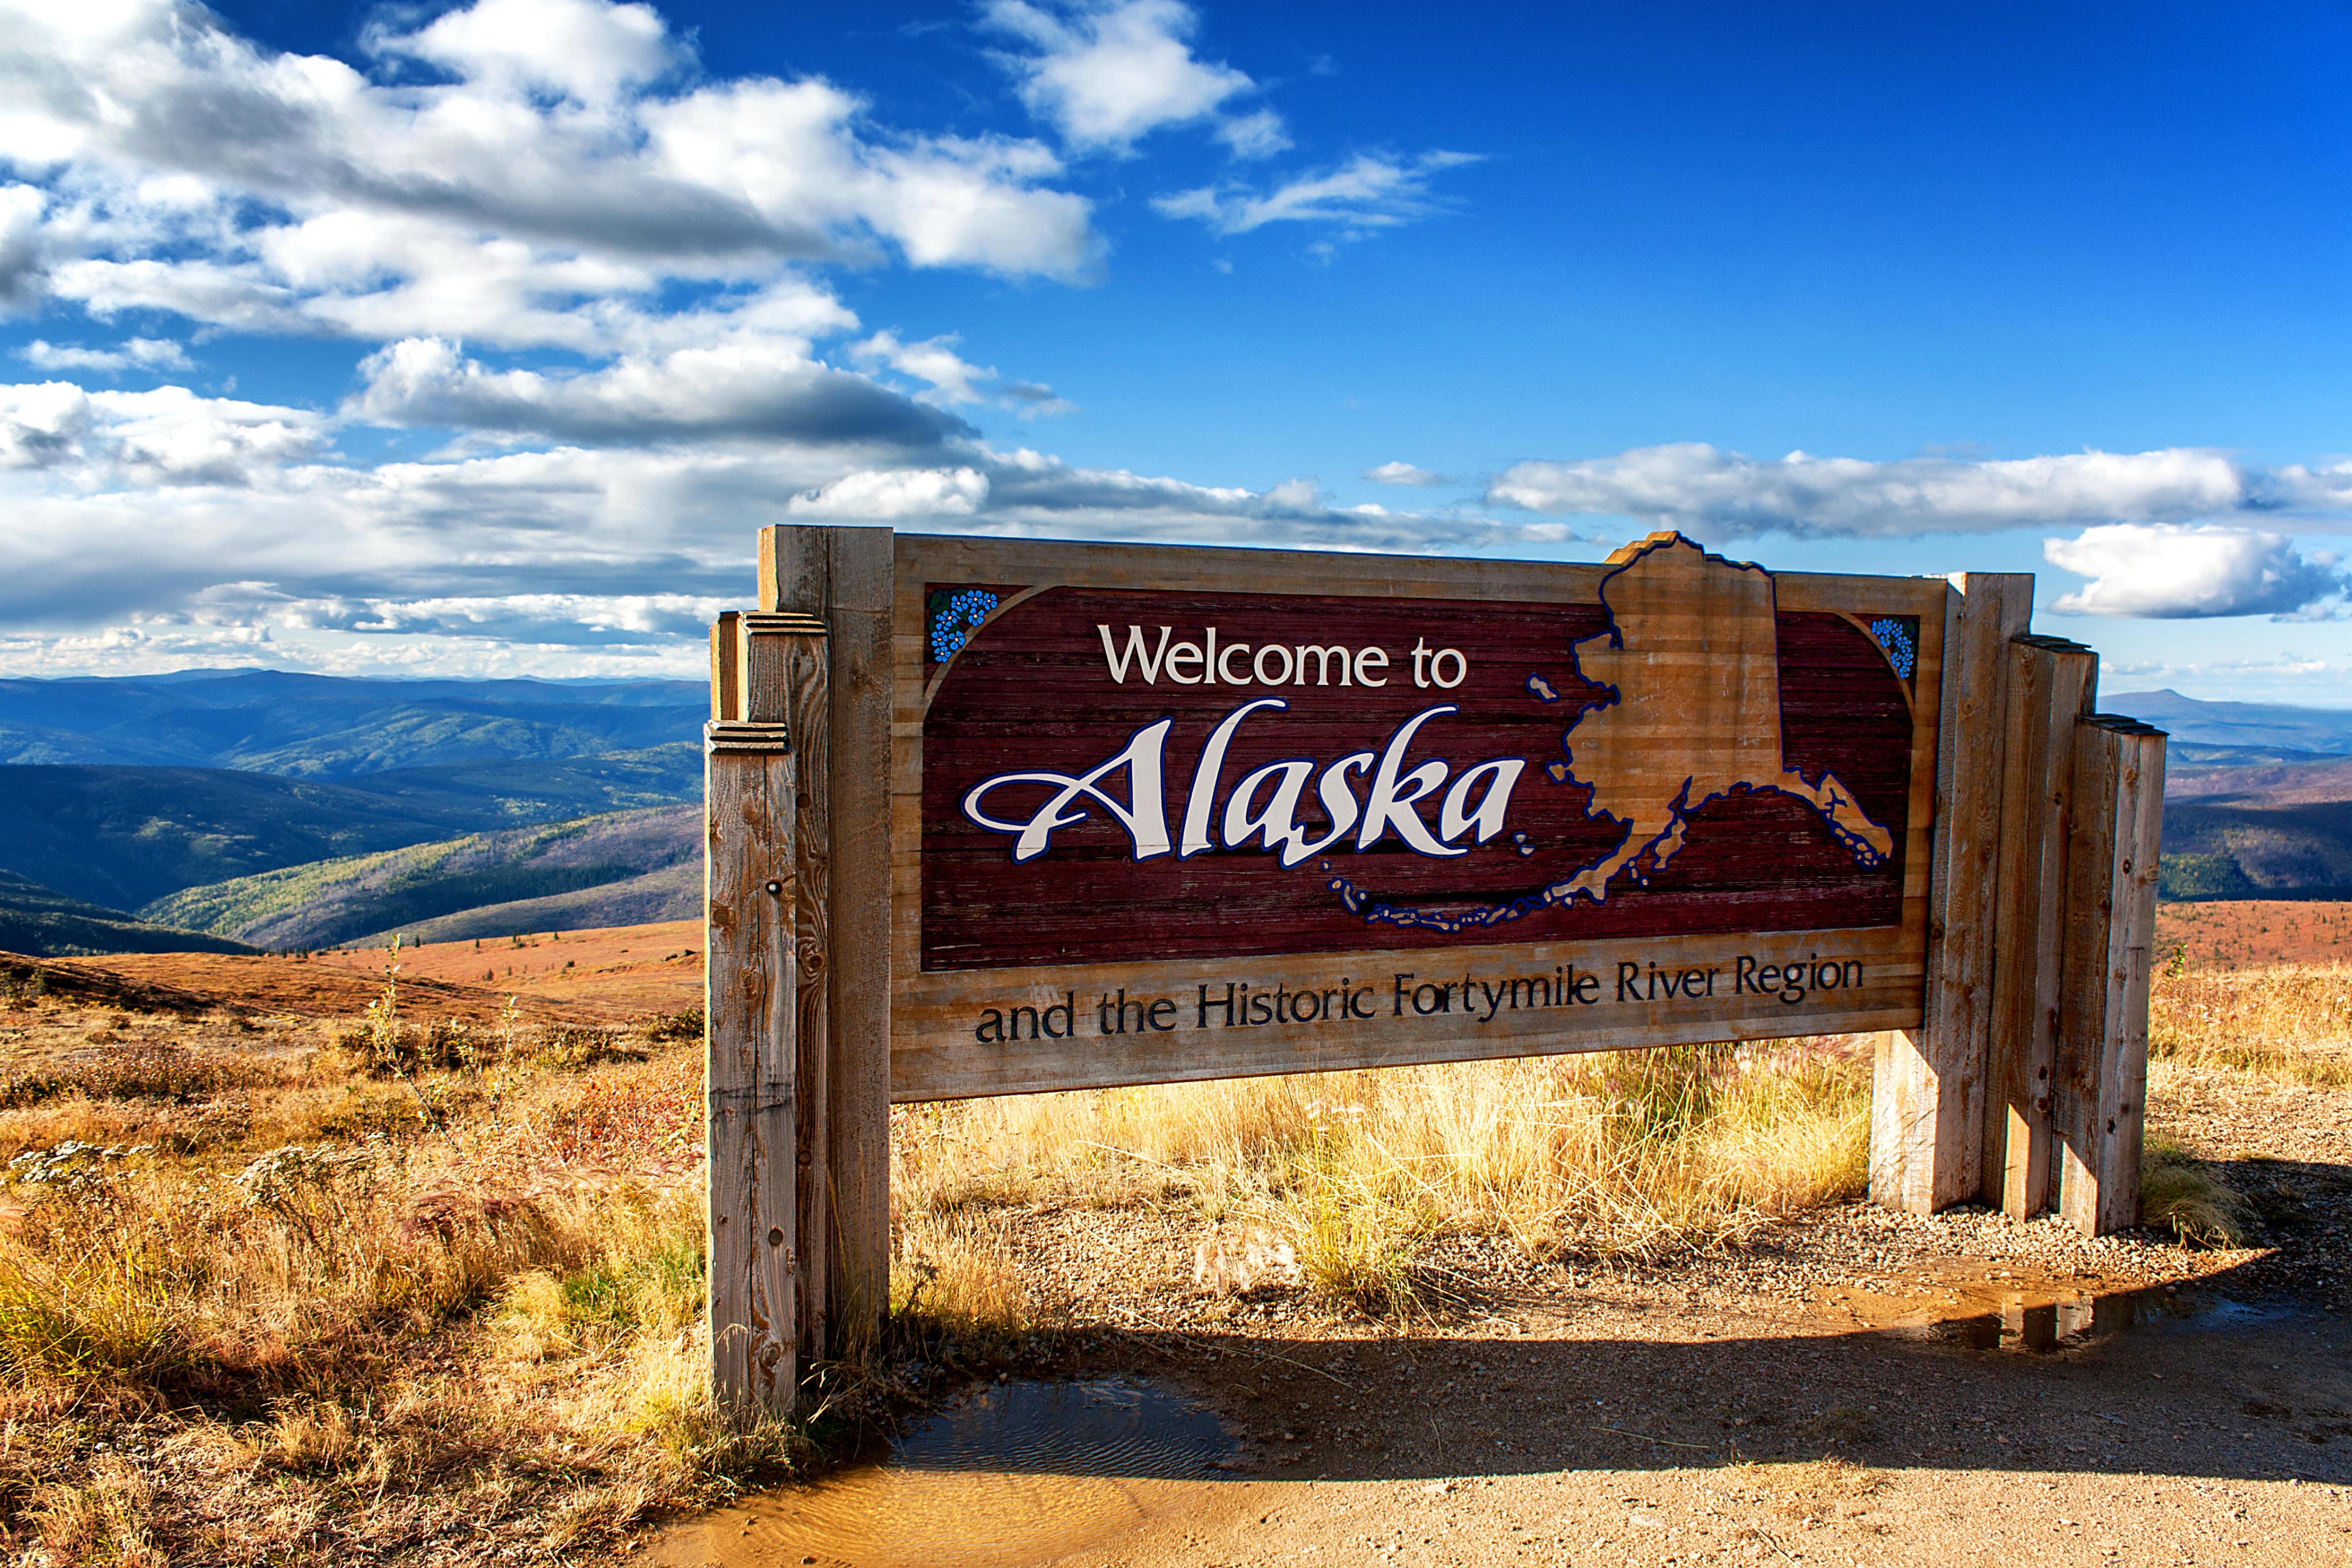 Alaska - “ngôi sao du lịch” mởi của Mỹ